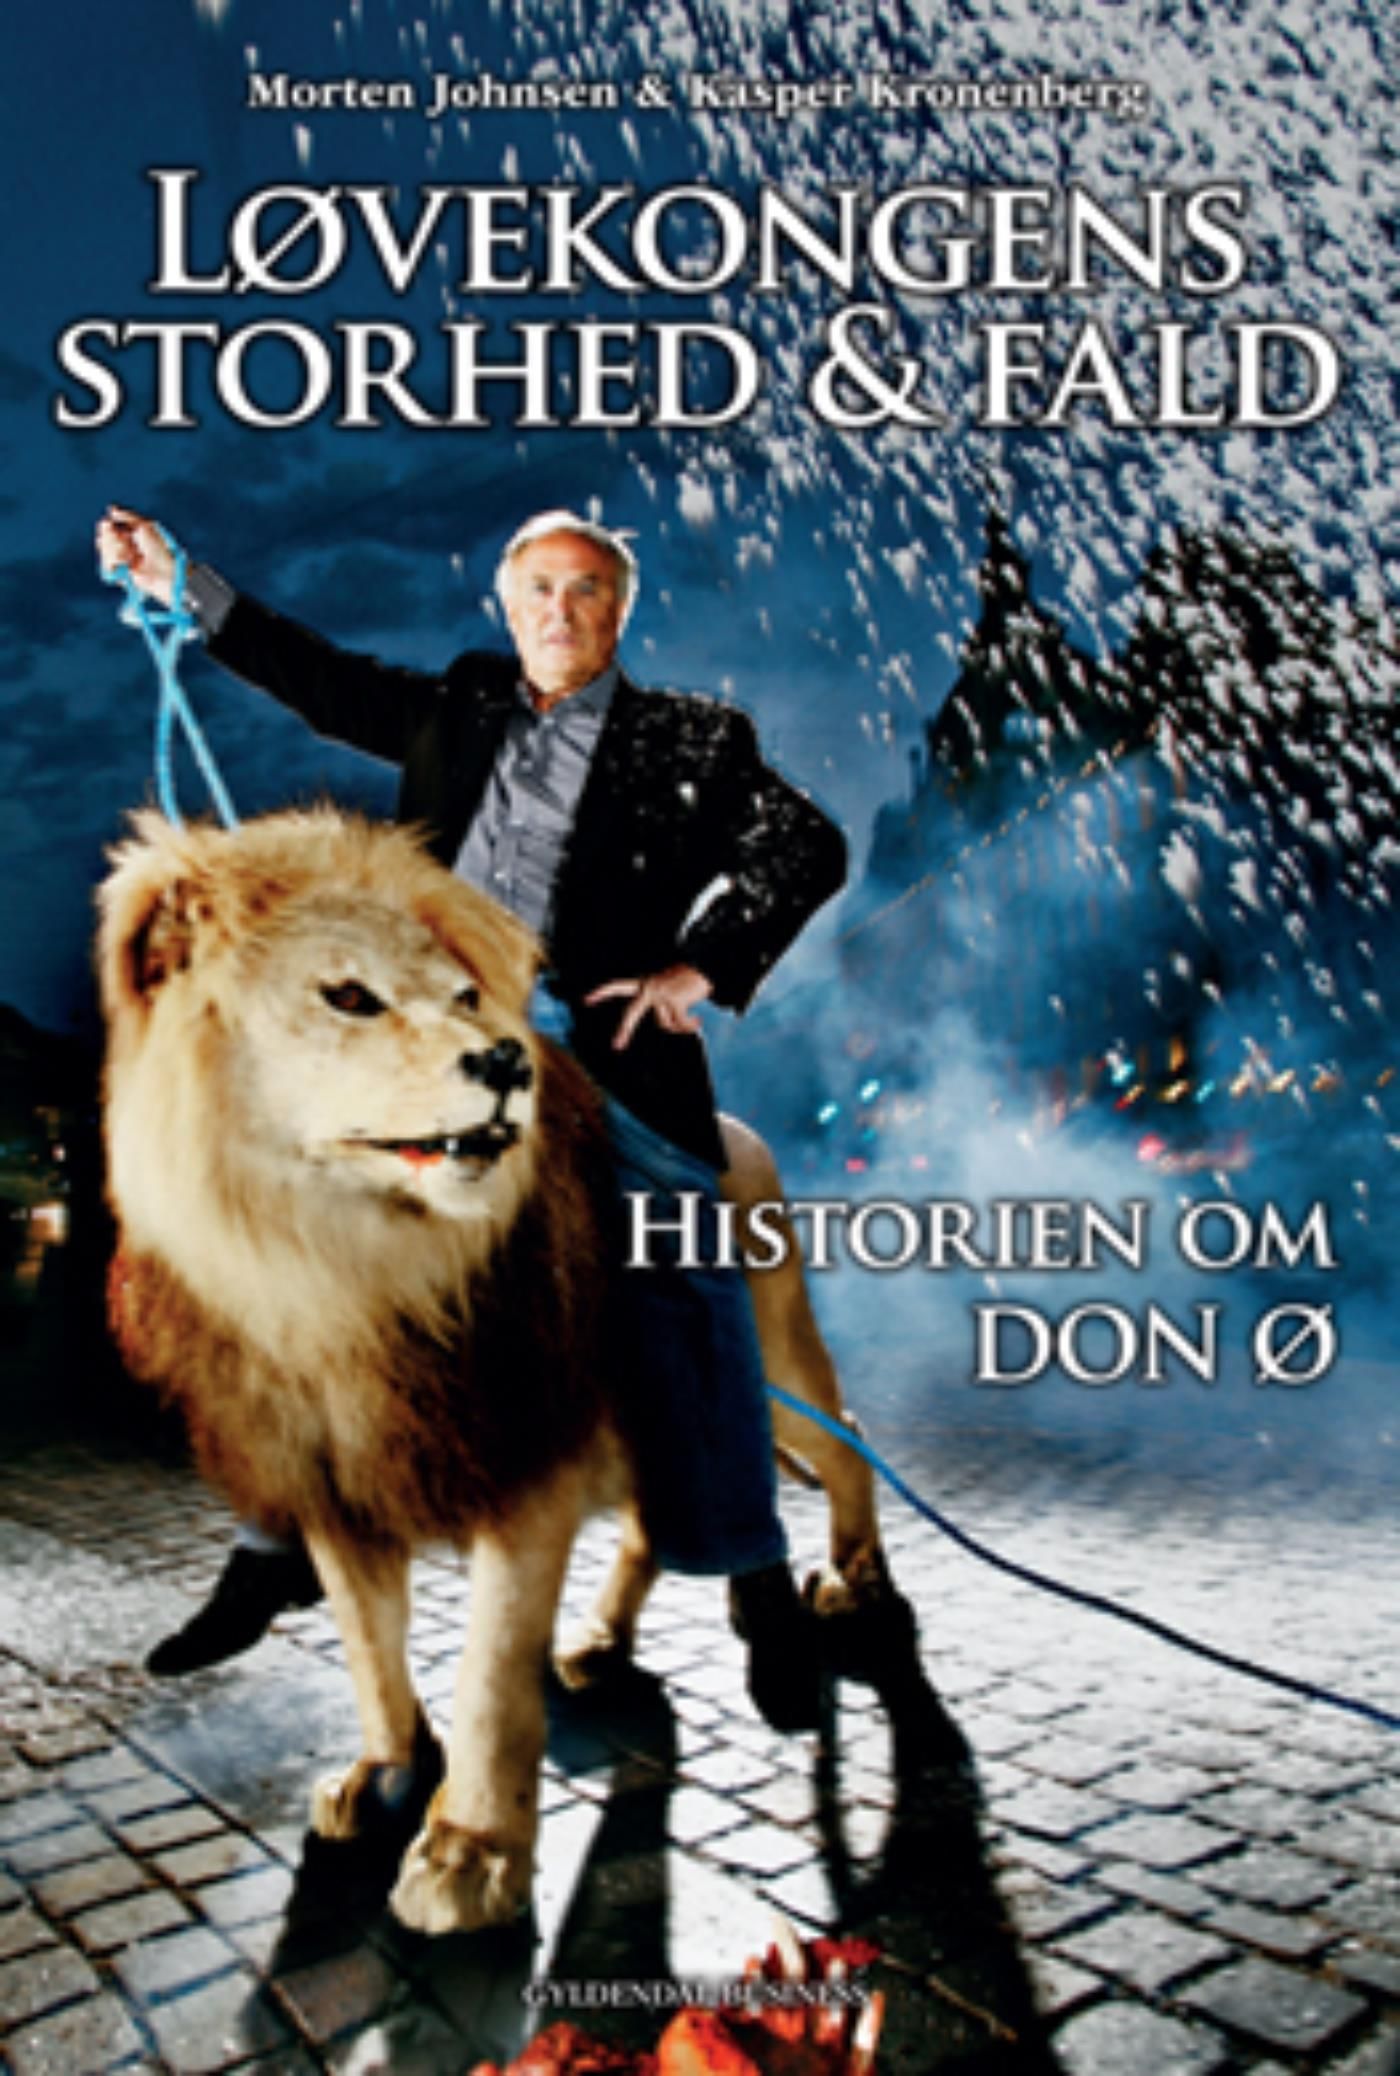 Løvekongens storhed og fald, e-bok av Morten Johnsen, Kasper Kronenberg